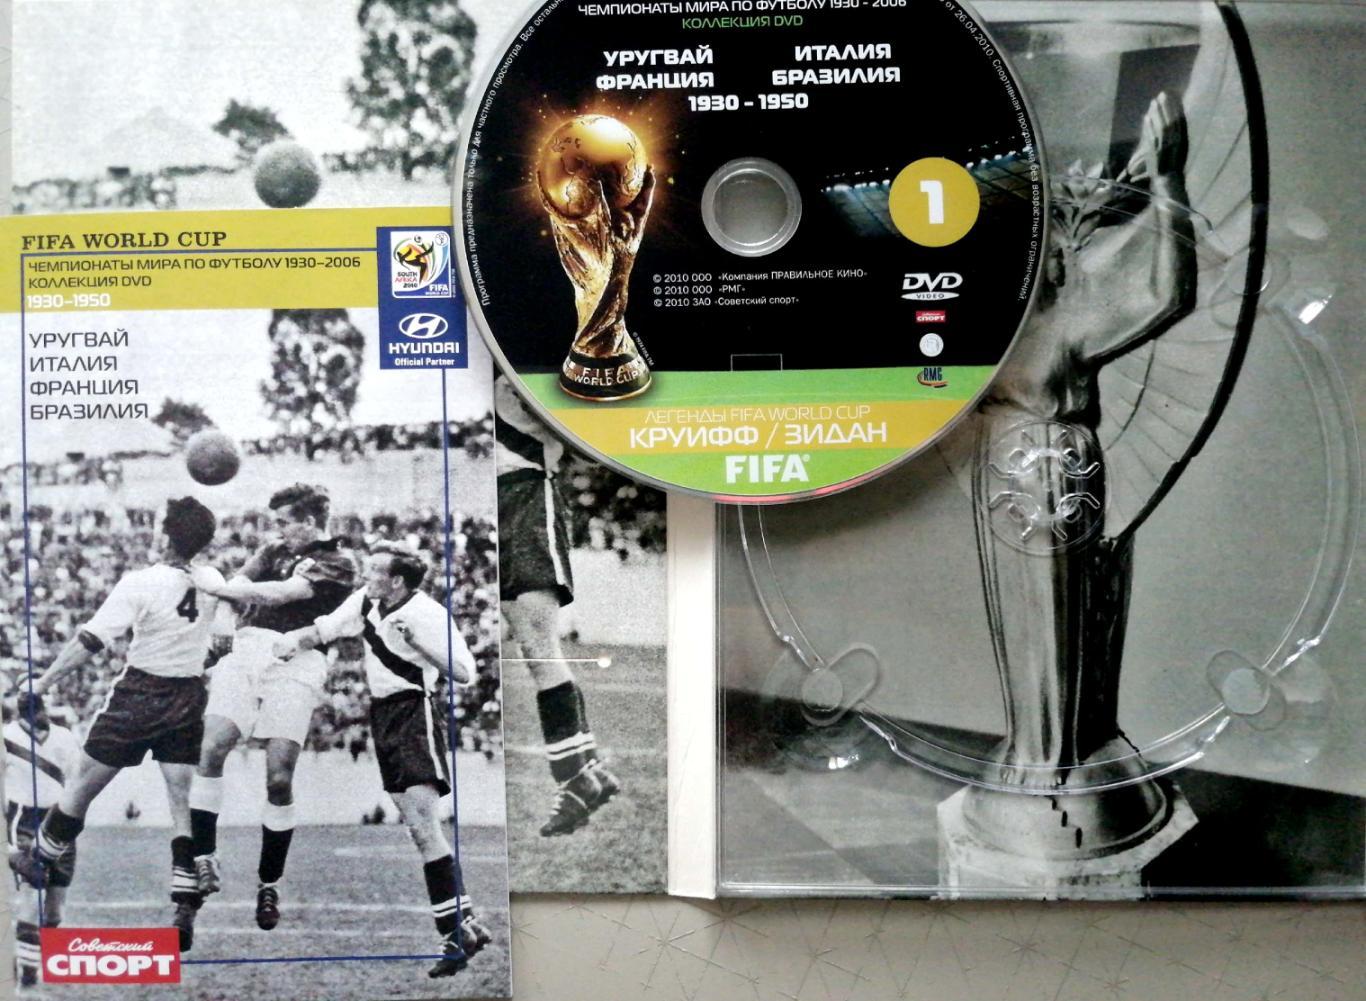 Коллекция DVD. Чемпионаты мира по футболу 1930-1950 (Советский спорт, 2010, с) 1